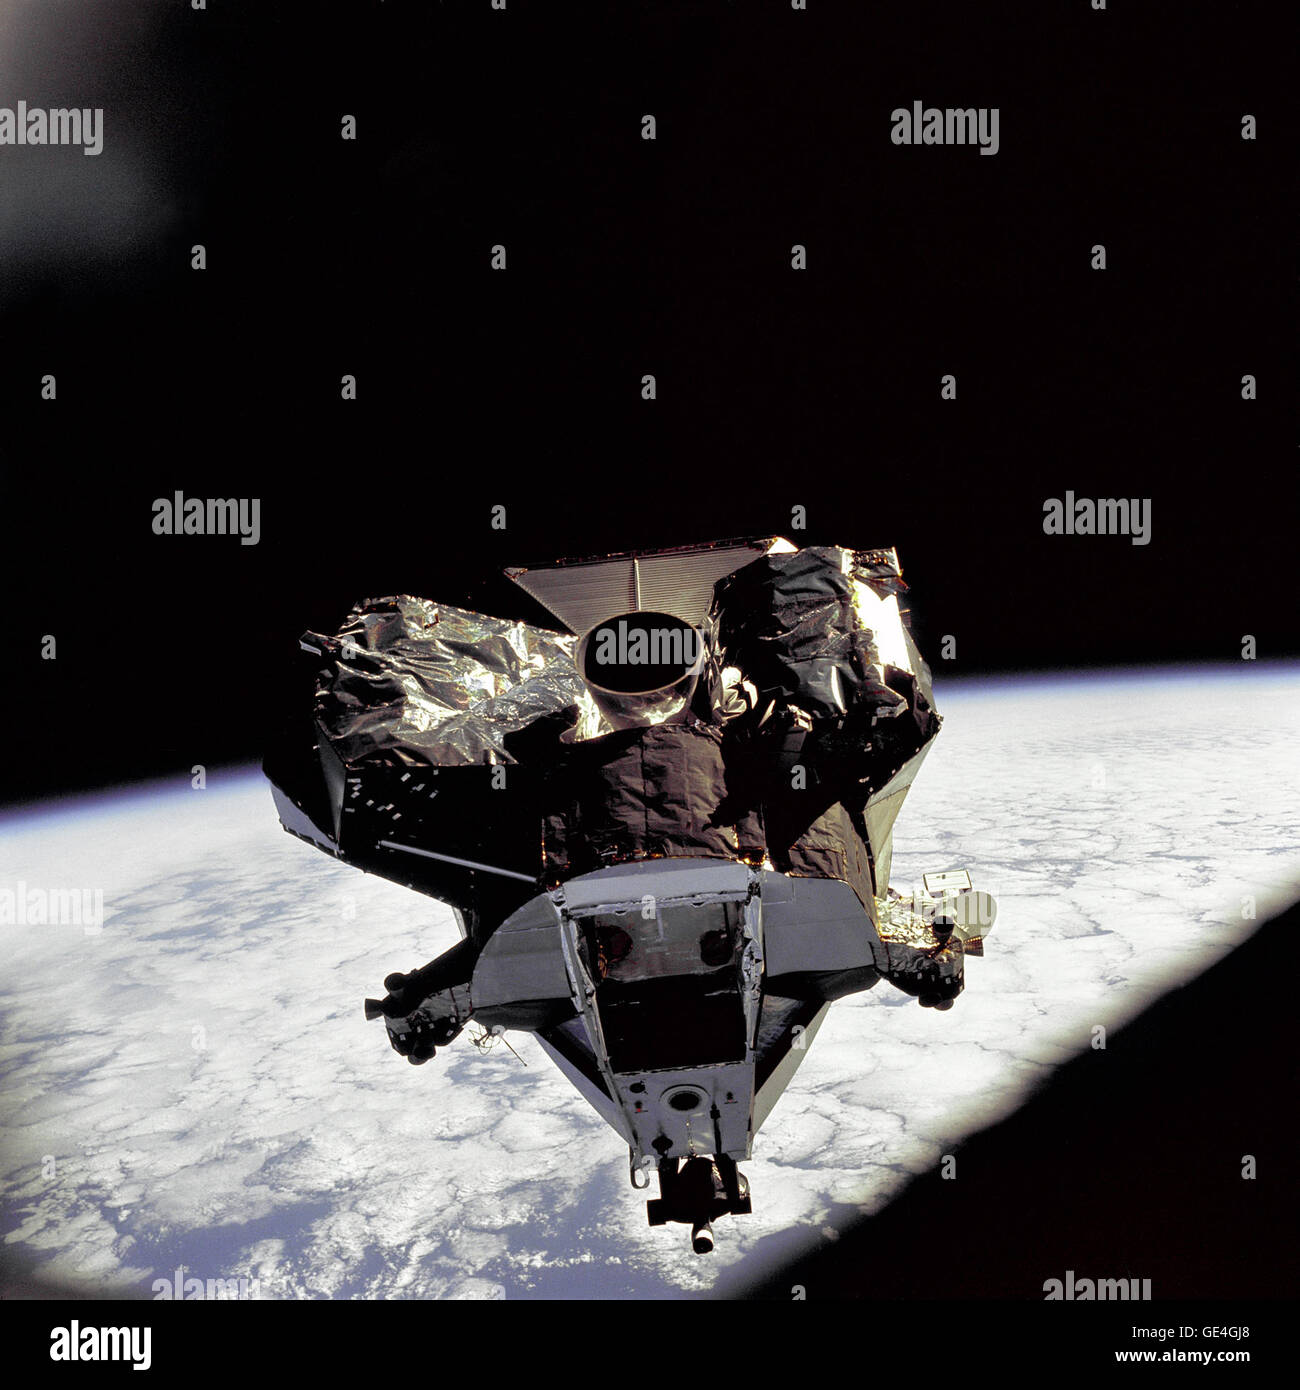 (7 März 1969) Die Mondlandefähre "Spider" Aufstieg Bühne am fünften Tag der Erde-Orbital-Mission Apollo 9 aus den Befehl/Testmodul fotografiert wird. Die Mondfähre Abstieg Bühne hatte bereits über Bord geworfen worden.  Bild-Nr.: AS09-21-3236 Stockfoto